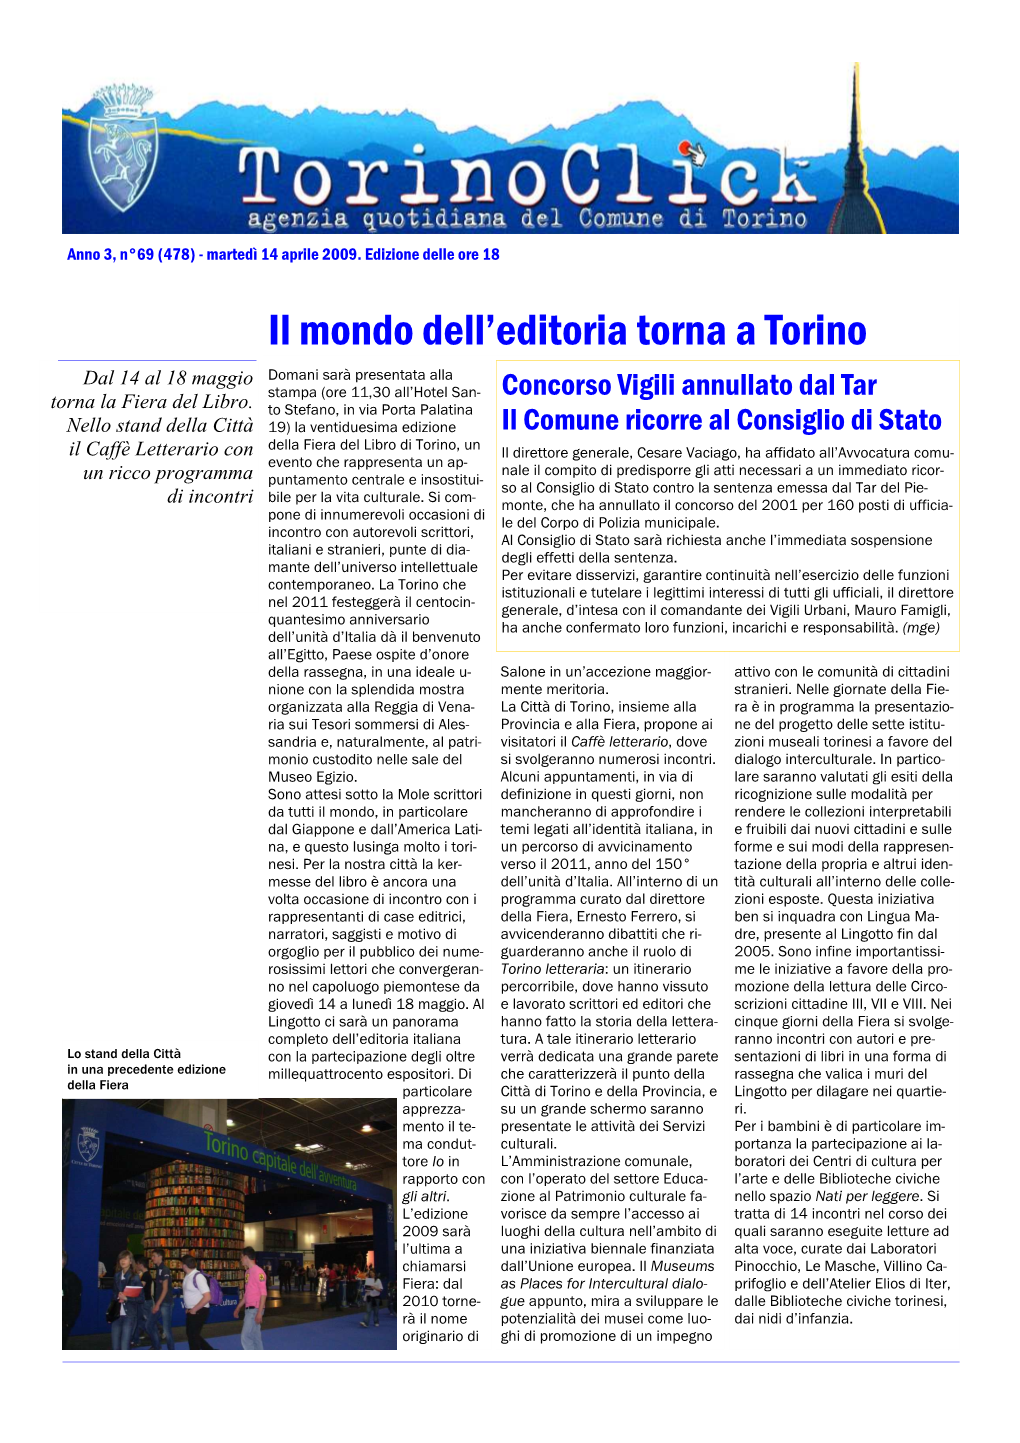 Il Mondo Dell'editoria Torna a Torino